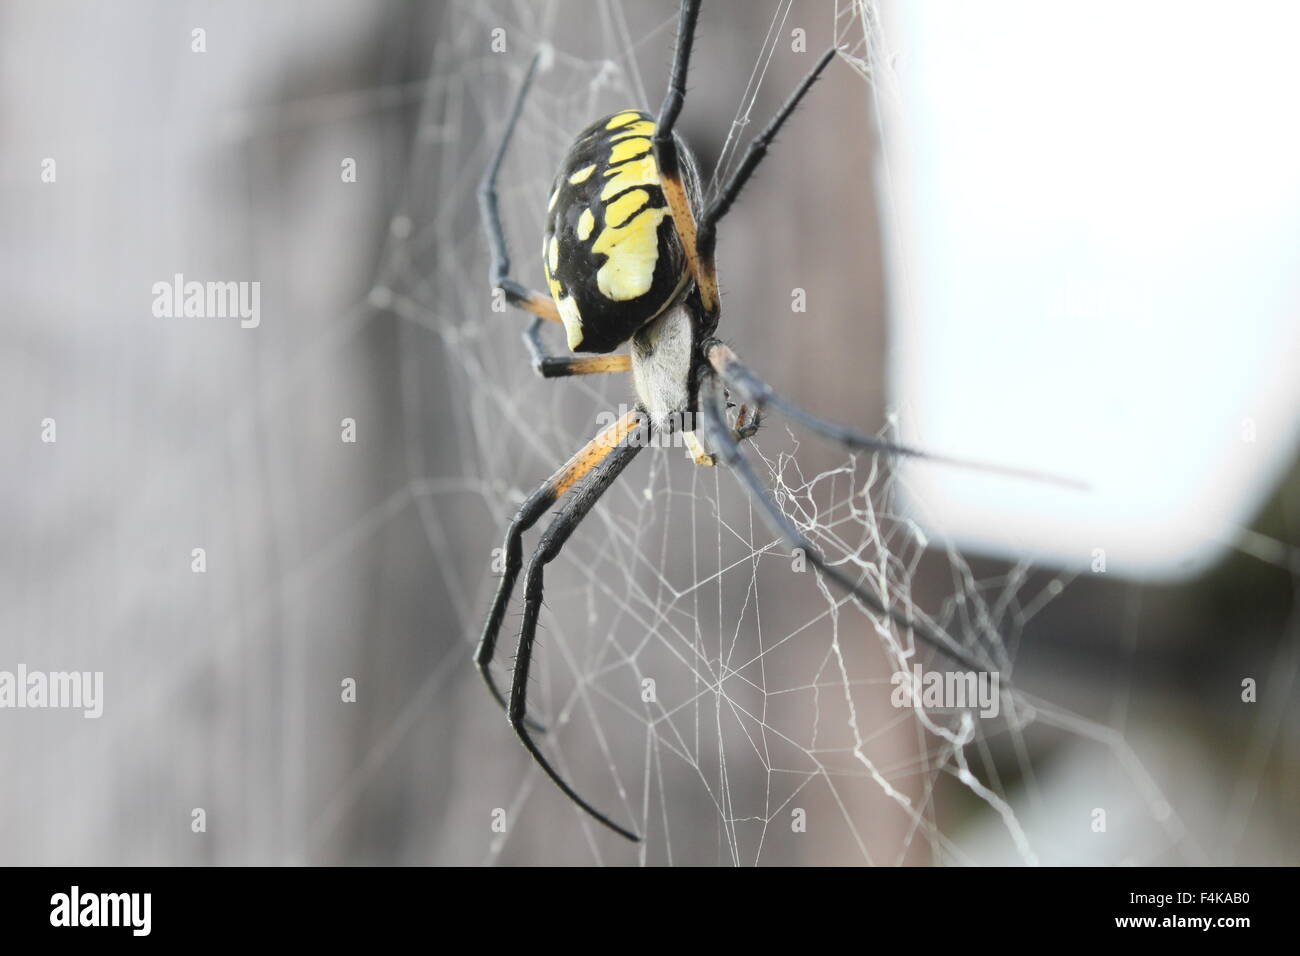 Noir et jaune femelle argiope suspendue dans son site web. Banque D'Images